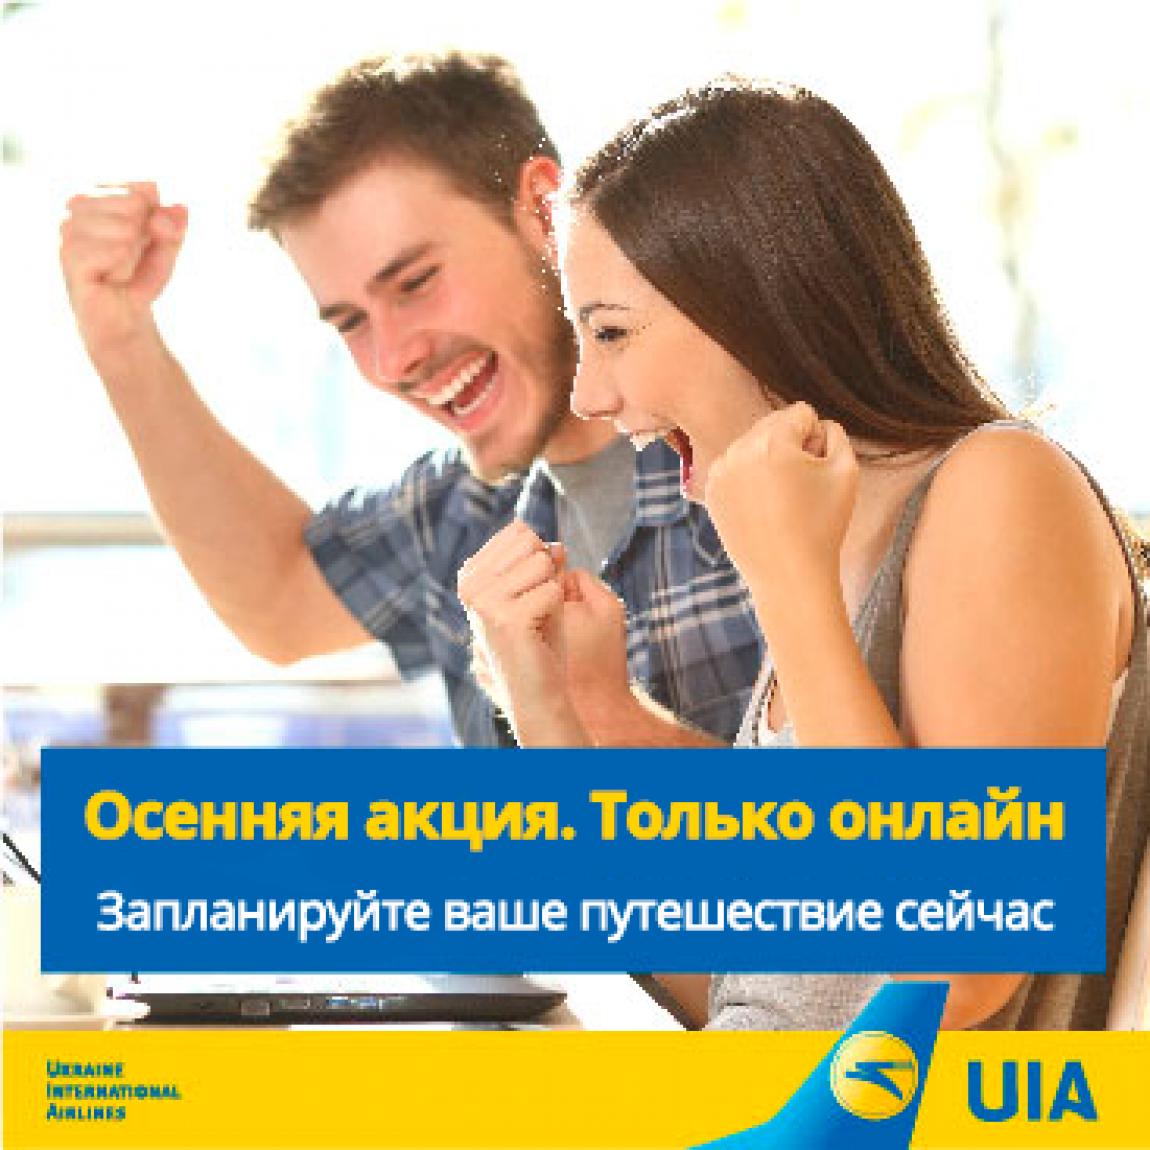 Cкидки до 10% при покупке билетов онлайн от Международных Авиалинии Украины